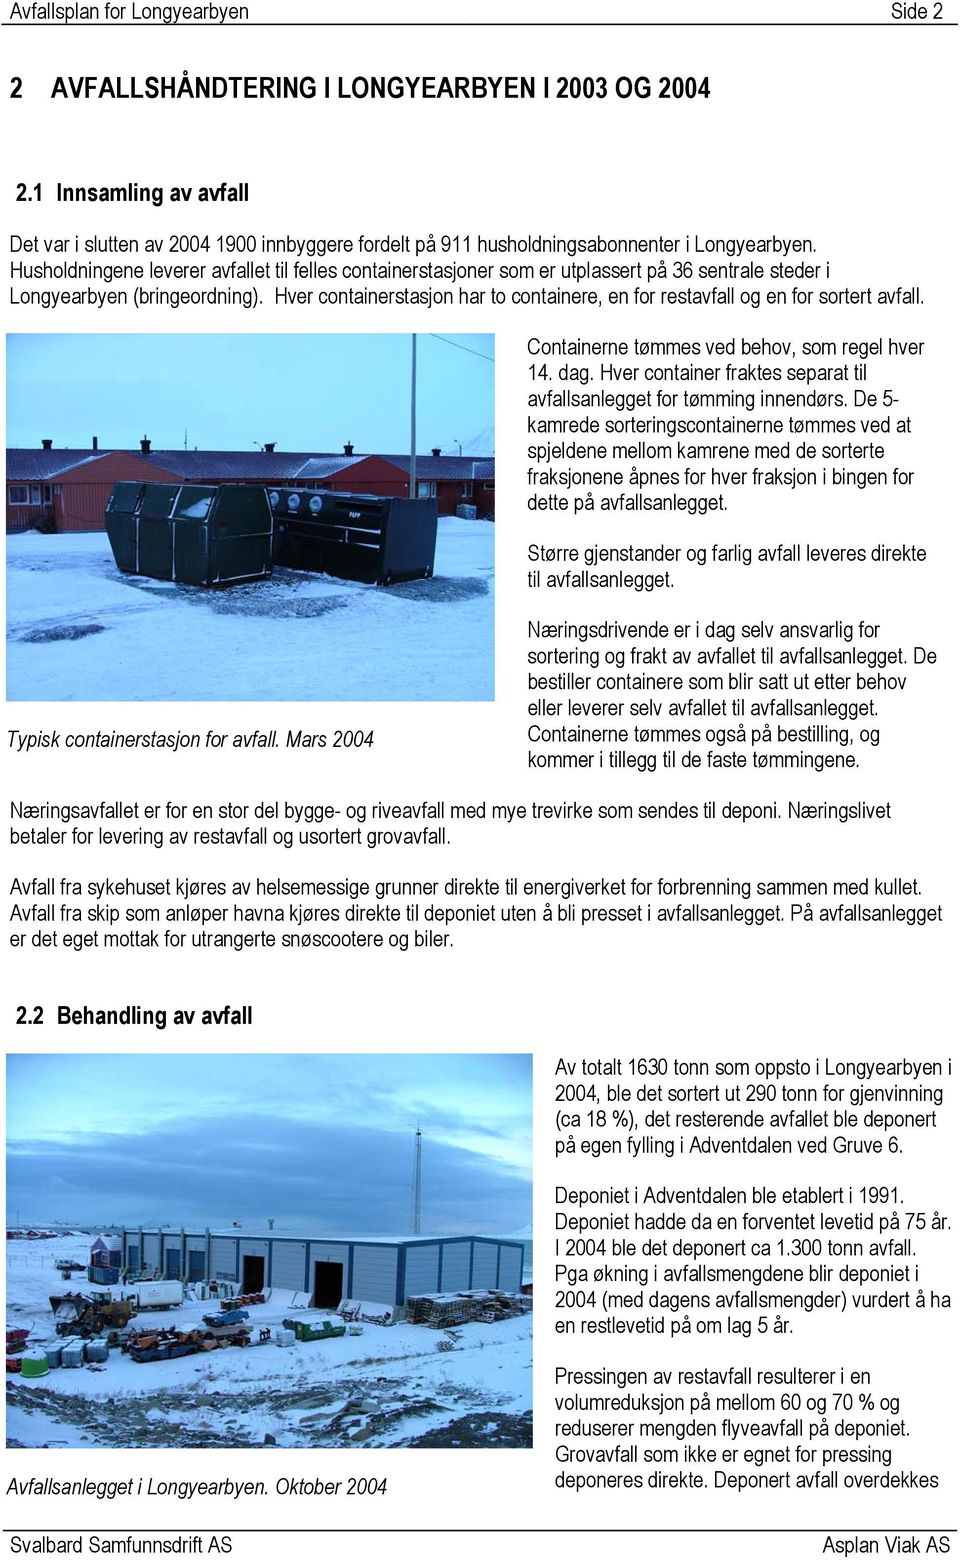 Husholdningene leverer avfallet til felles containerstasjoner som er utplassert på 36 sentrale steder i Longyearbyen (bringeordning).